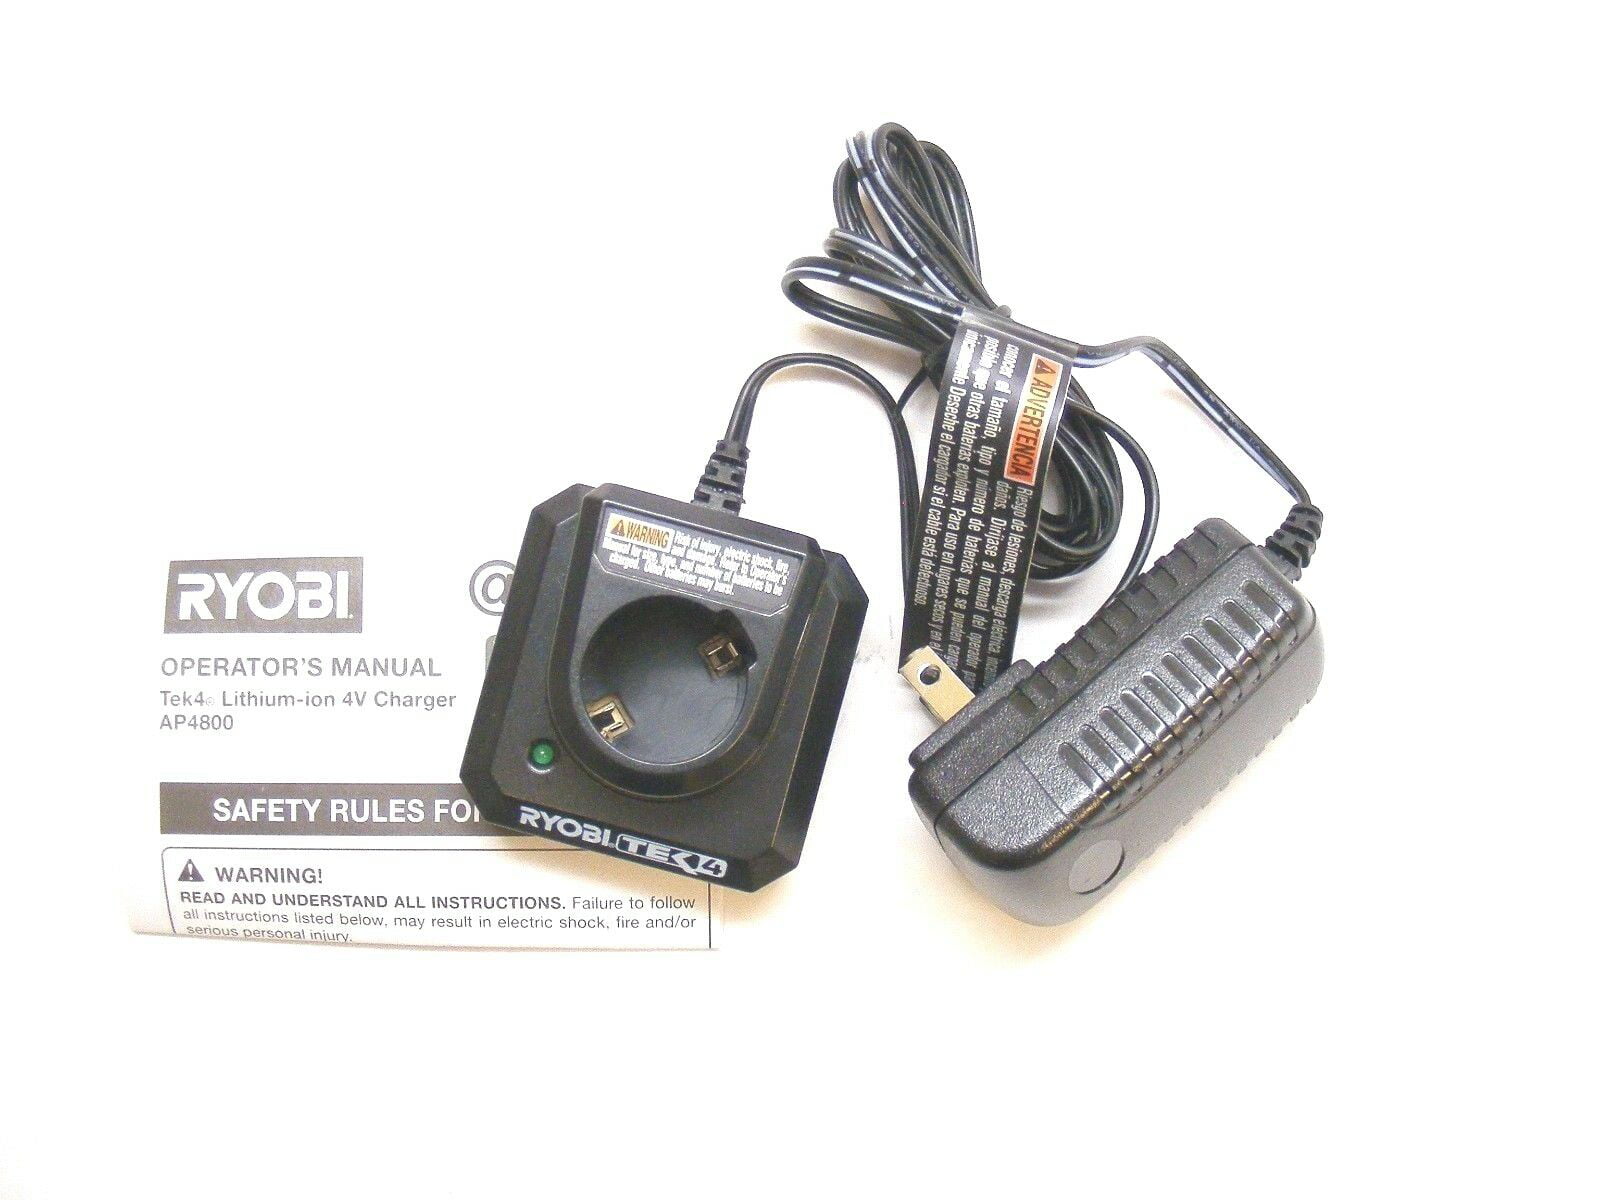 Ryobi 140132007 TEK4 AP4800 Li-on 4v 10-12hr Charger 